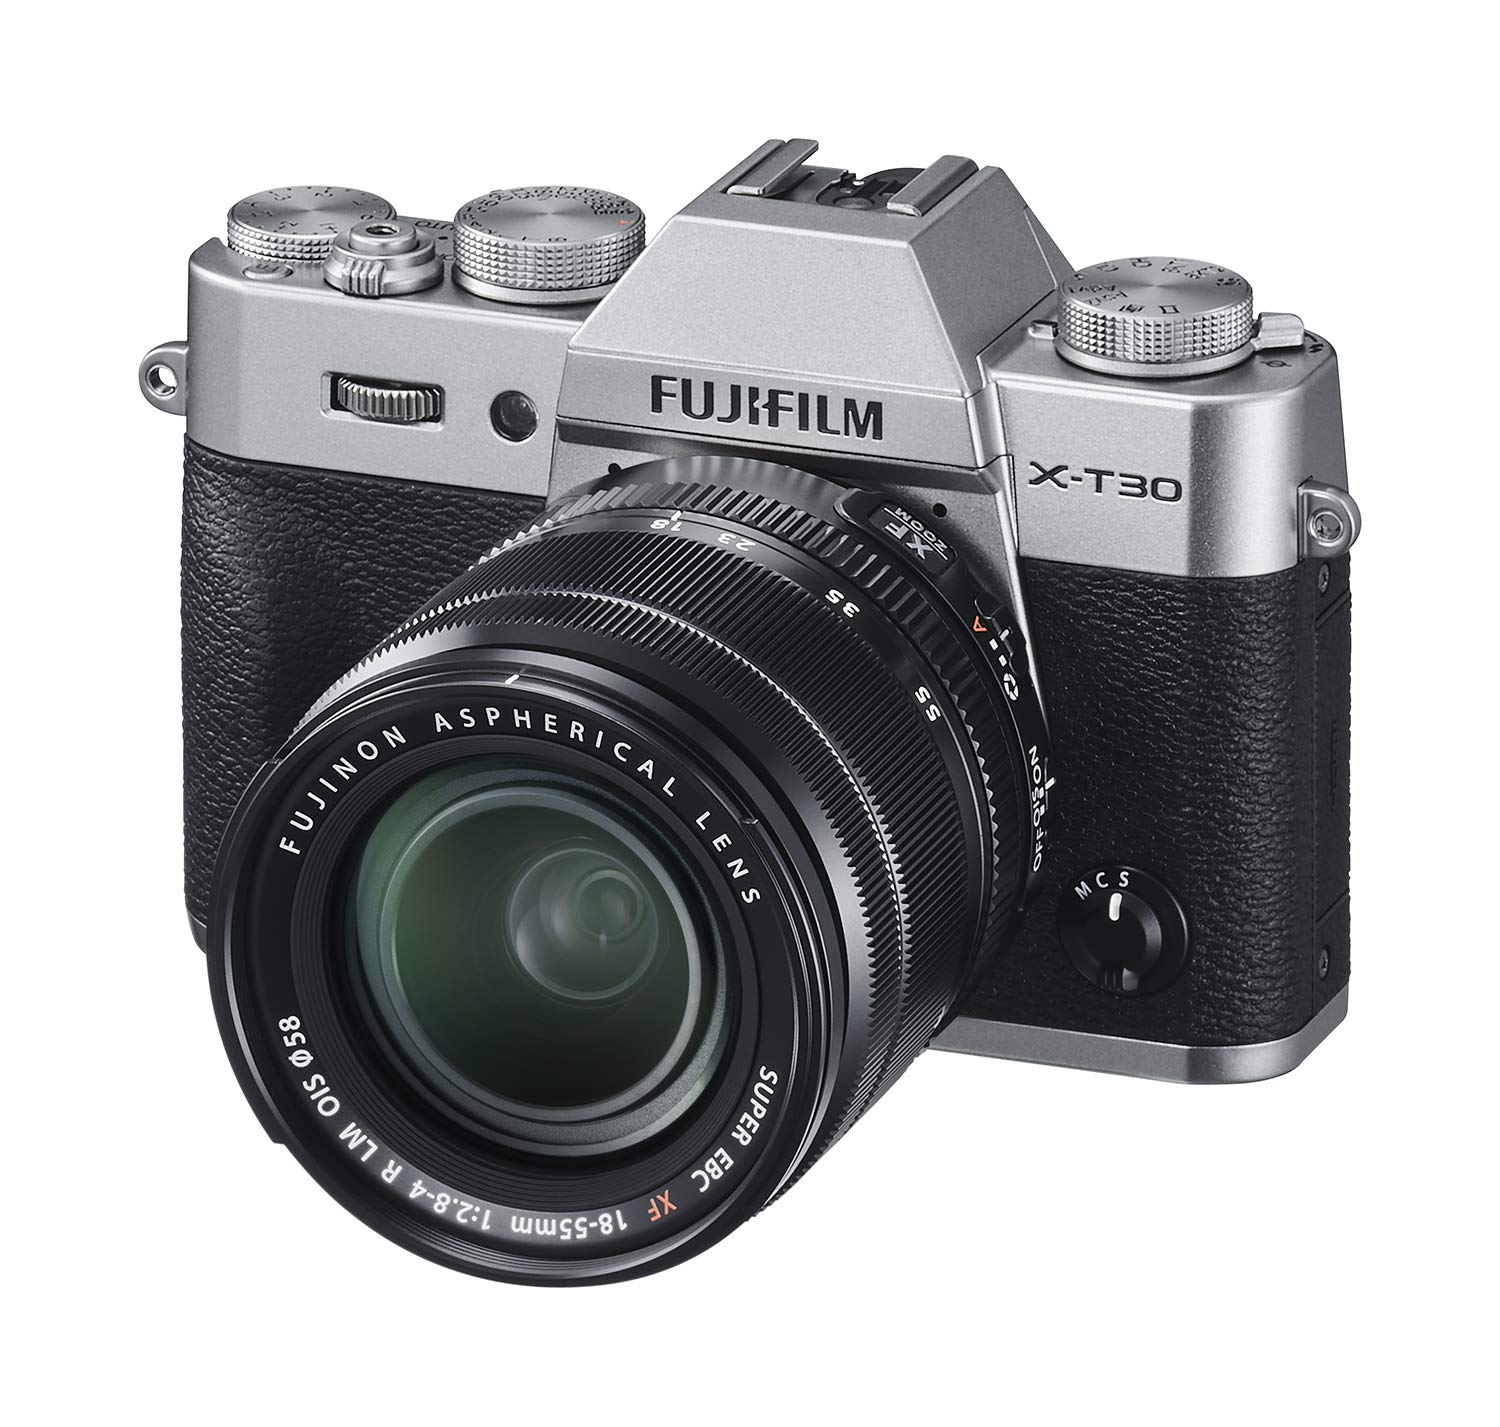 Fujifilm Appareil photo sans miroir  X-T30 avec objectif XF 18-55 mm f / 2.8-4 R LM OIS - Argent anthracite